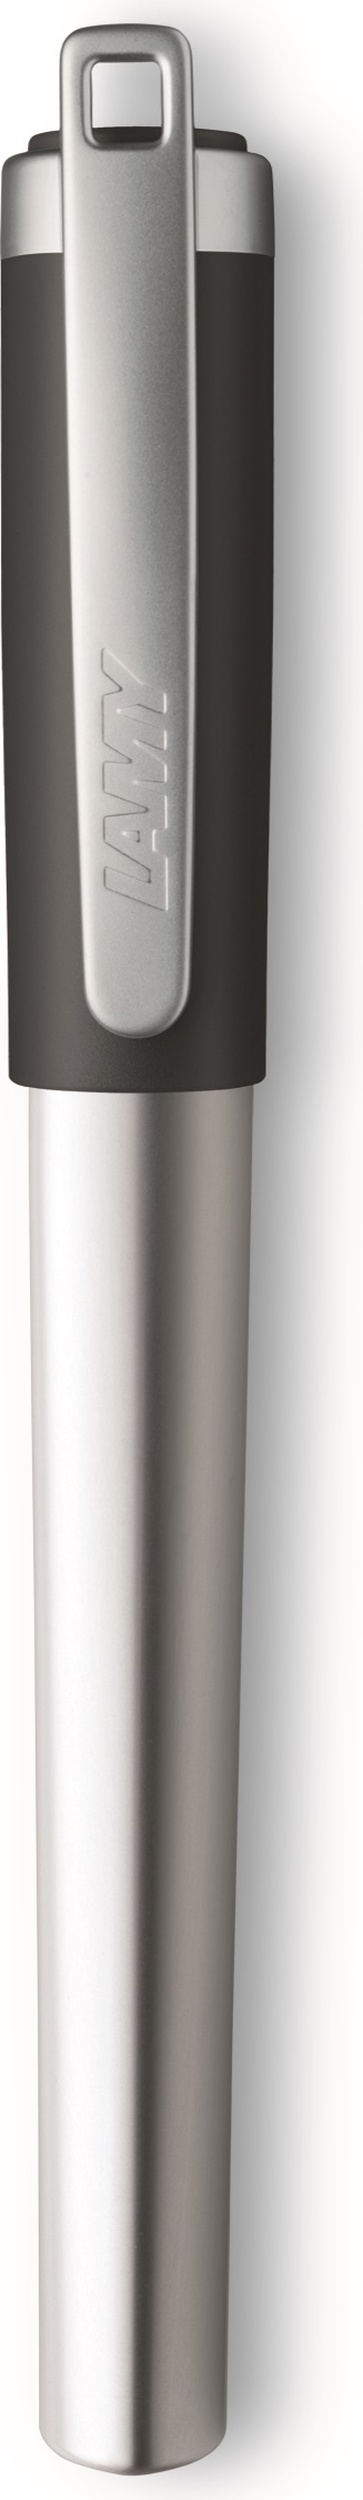 Nexx Füllfederhalter A mit Metallclip - Lamy 4000630